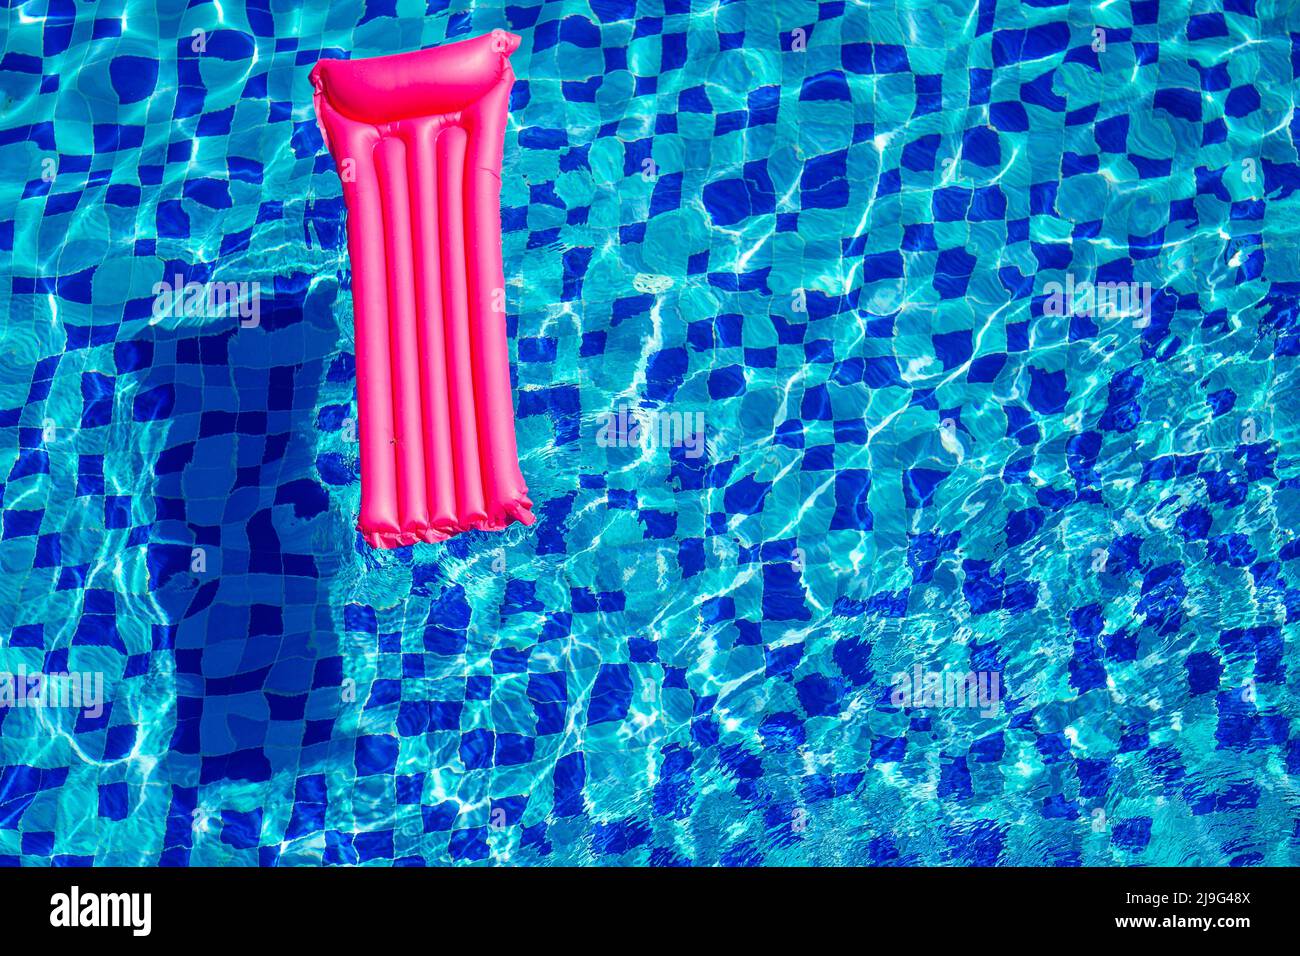 Pinke aufblasbare Matratze auf blau türkisfarbenem Wasser Swimmingpool kopieren Raum Draufsicht Stockfoto